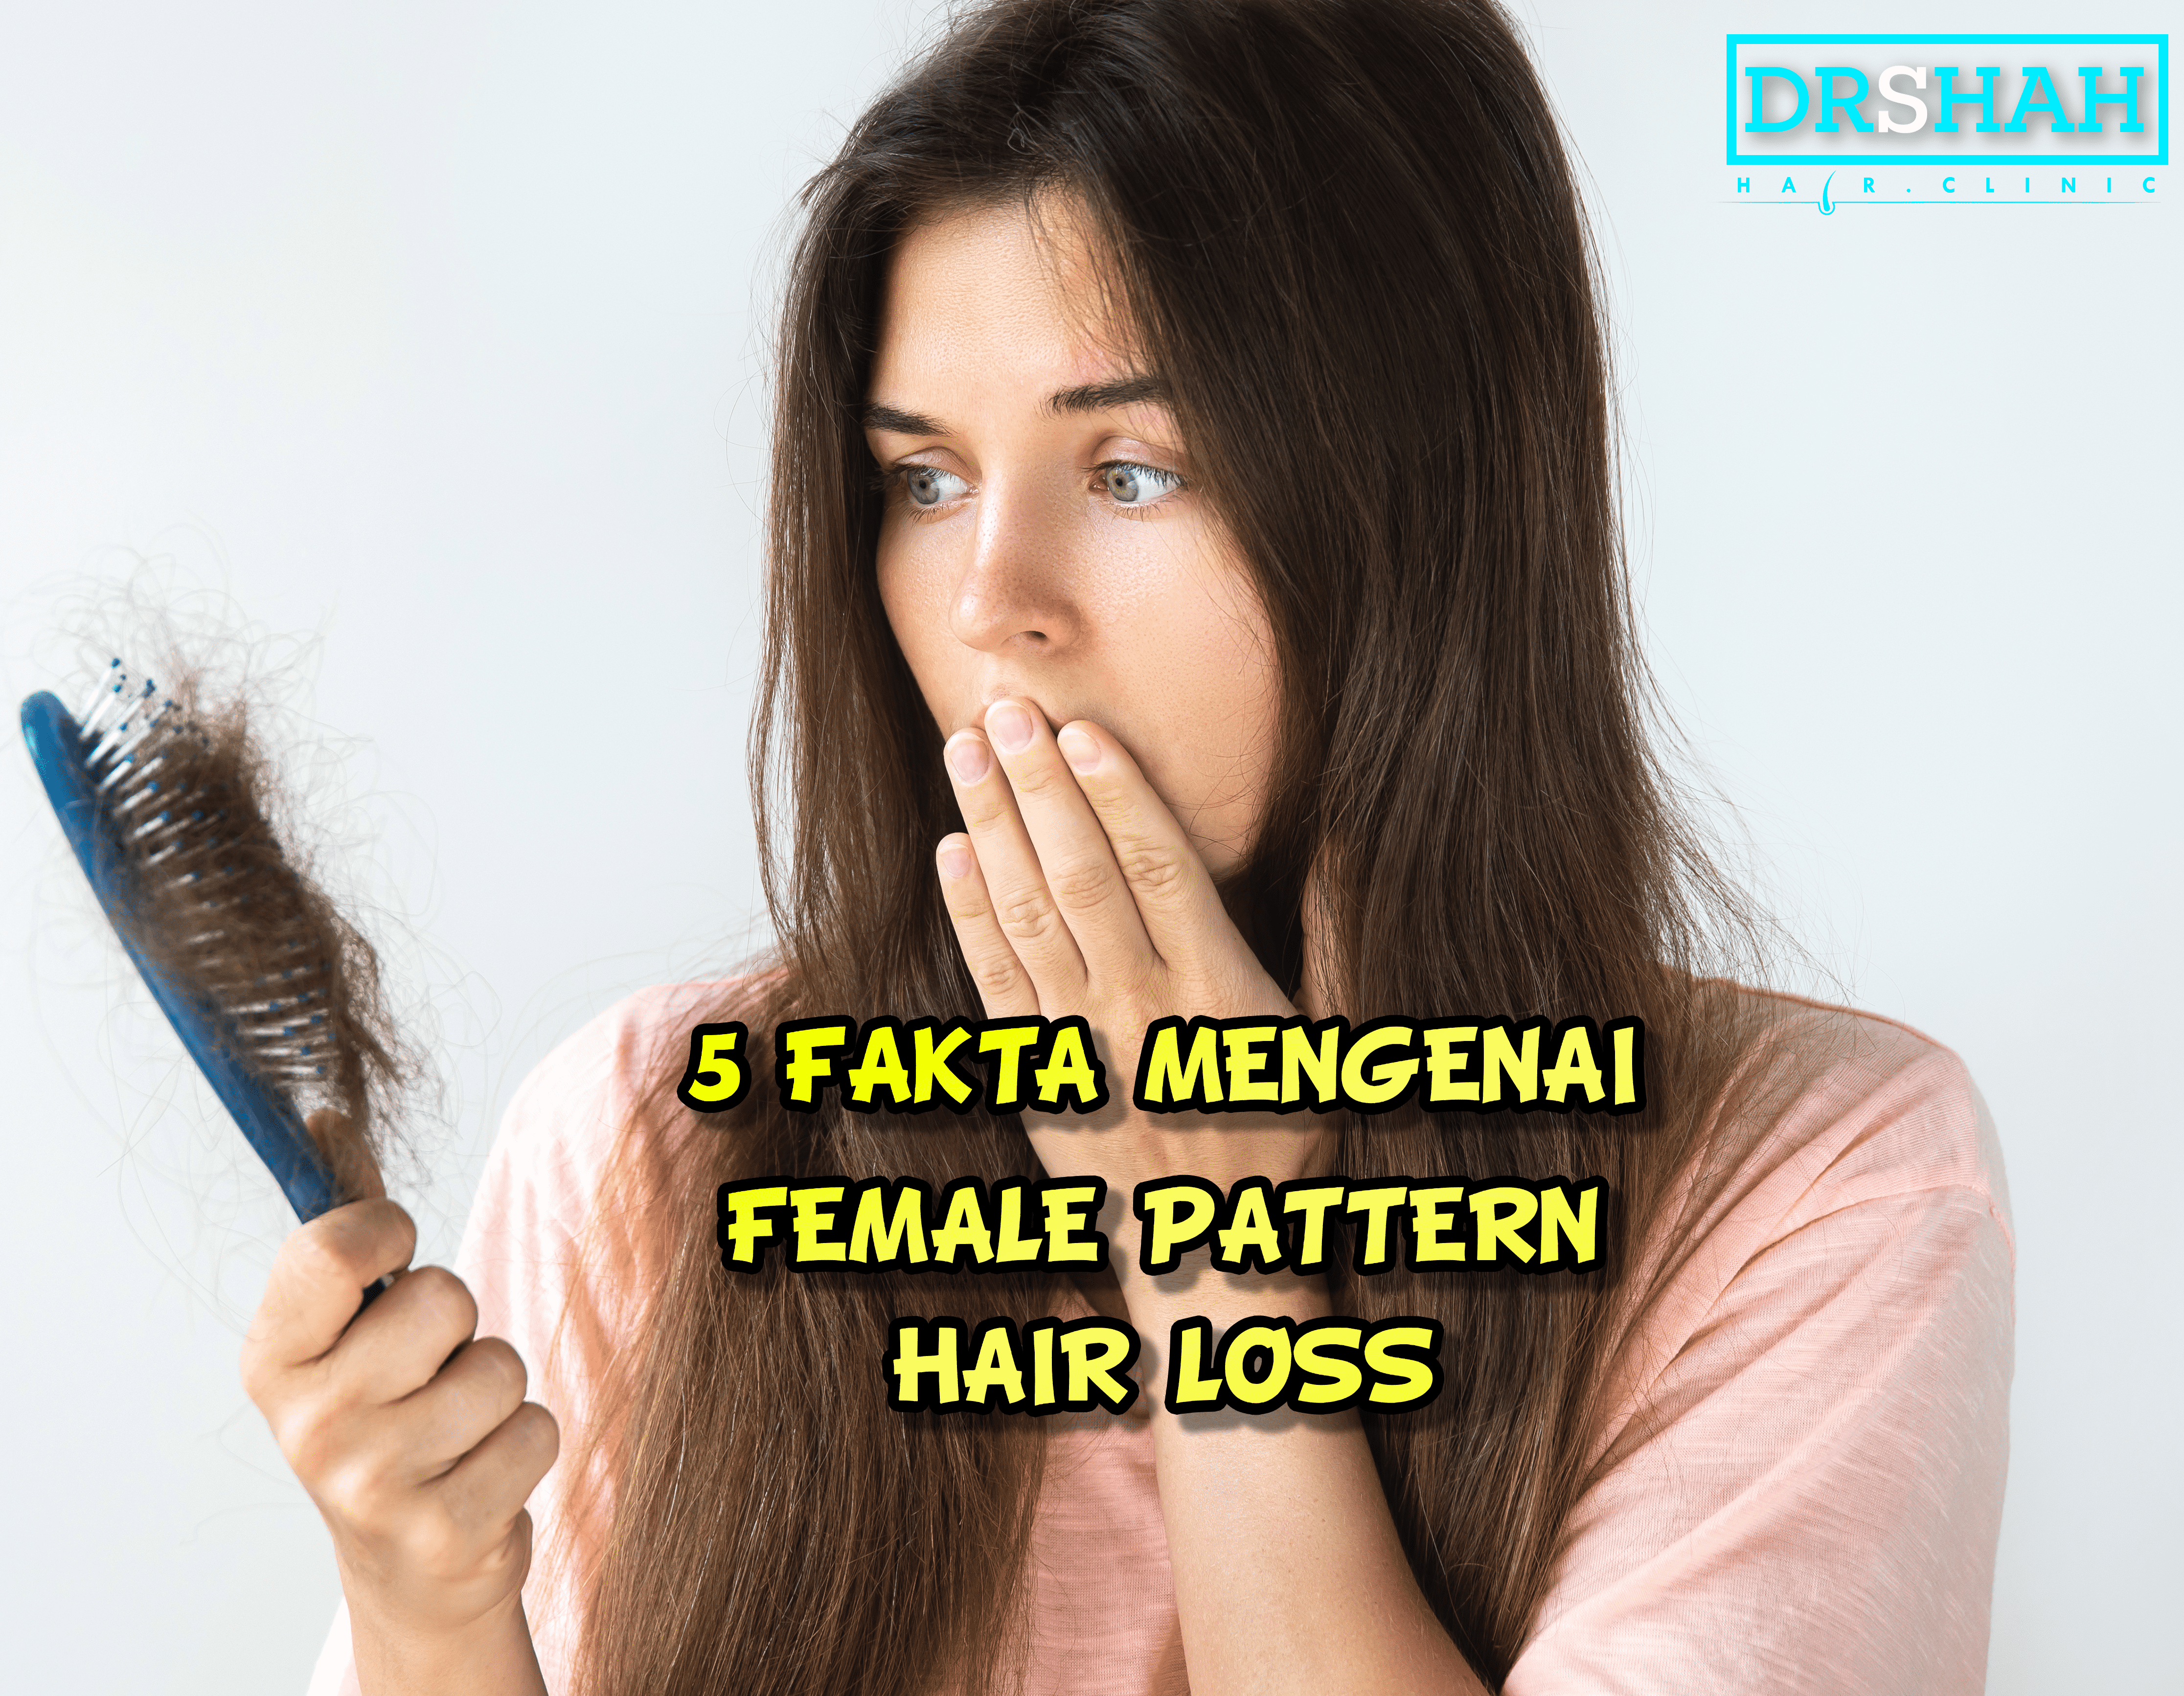 5 FAKTA MENGENAI FEMALE PATTERN HAIR LOSS